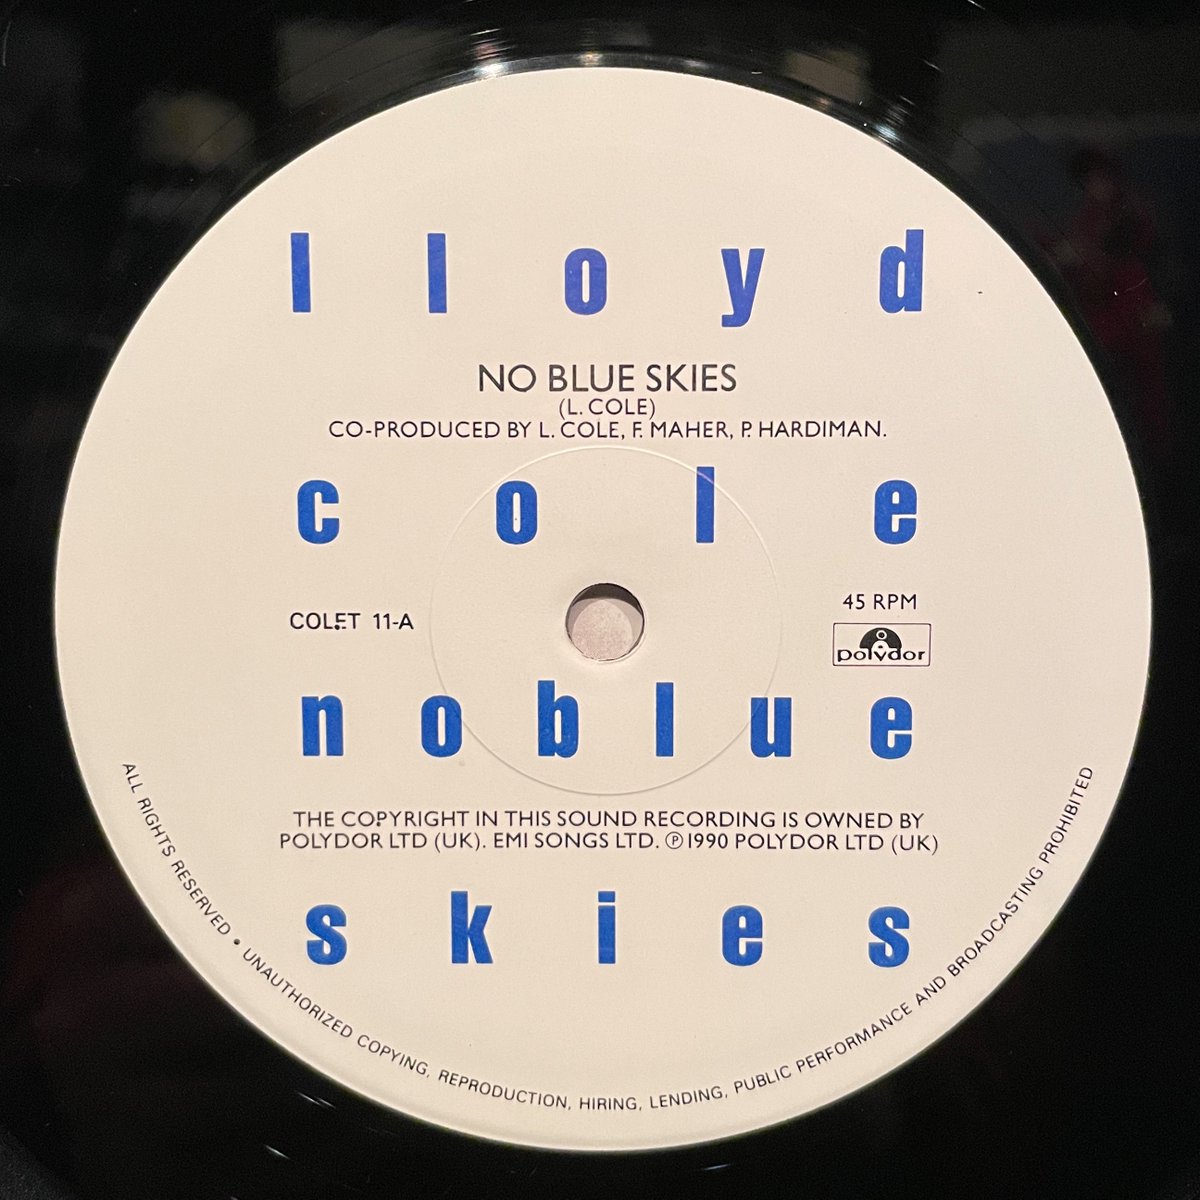 ほな10いこか
LLOYD COLE / No Blue Skies [’90 Polydor --- COLET 11]　　　
#LloydCole  #NoBlueSkies  #HammersmithOdeon  #1990london  #vinylbar  #musicbar  #レコードバー  #mhc28022023
youtube.com/watch?v=cjcuLx…